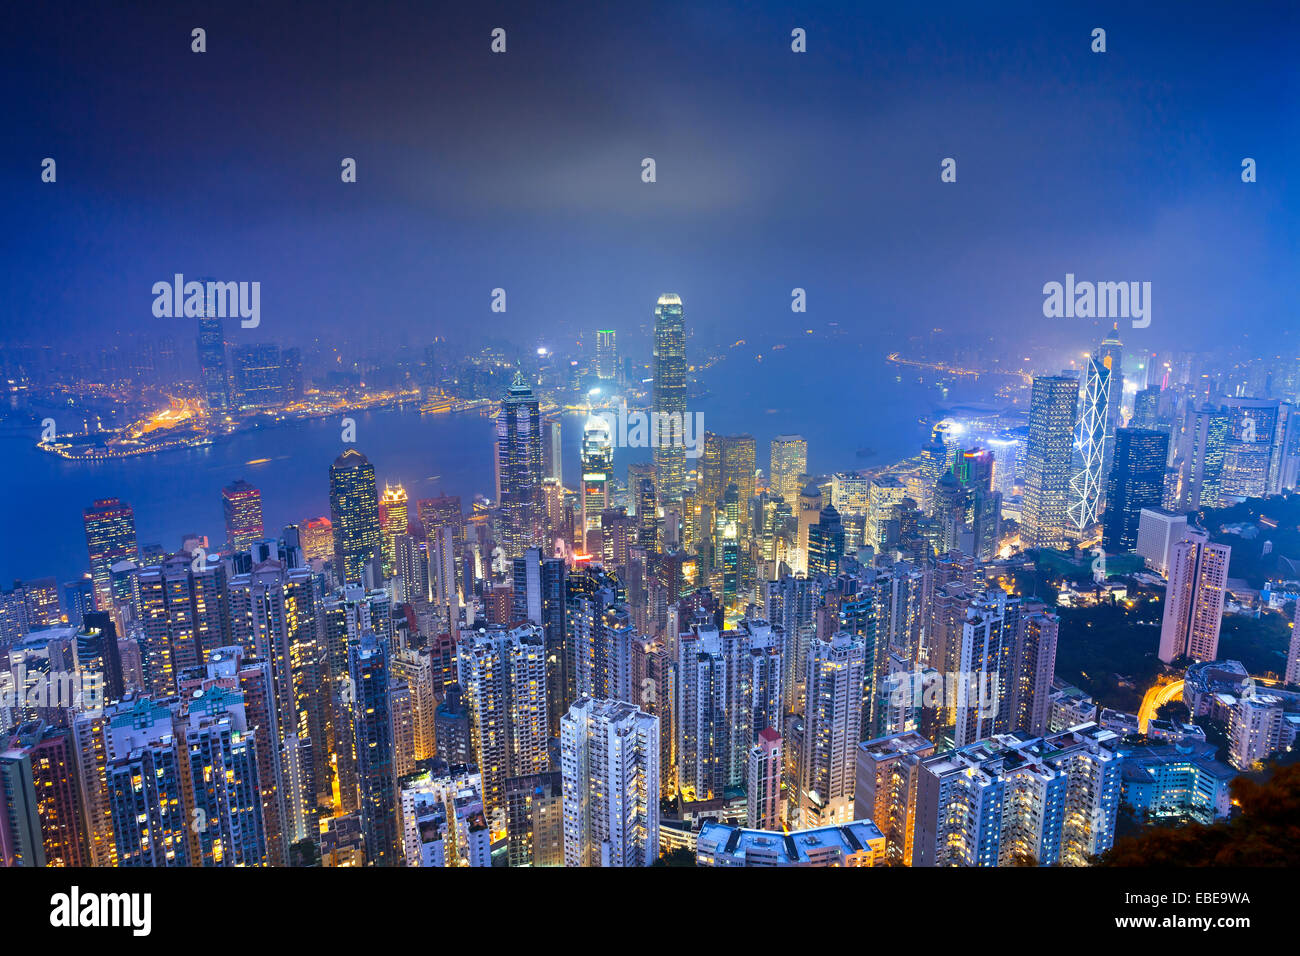 Hong Kong. Image de Hong Kong avec de nombreux gratte-ciel au crépuscule heure bleue. Banque D'Images